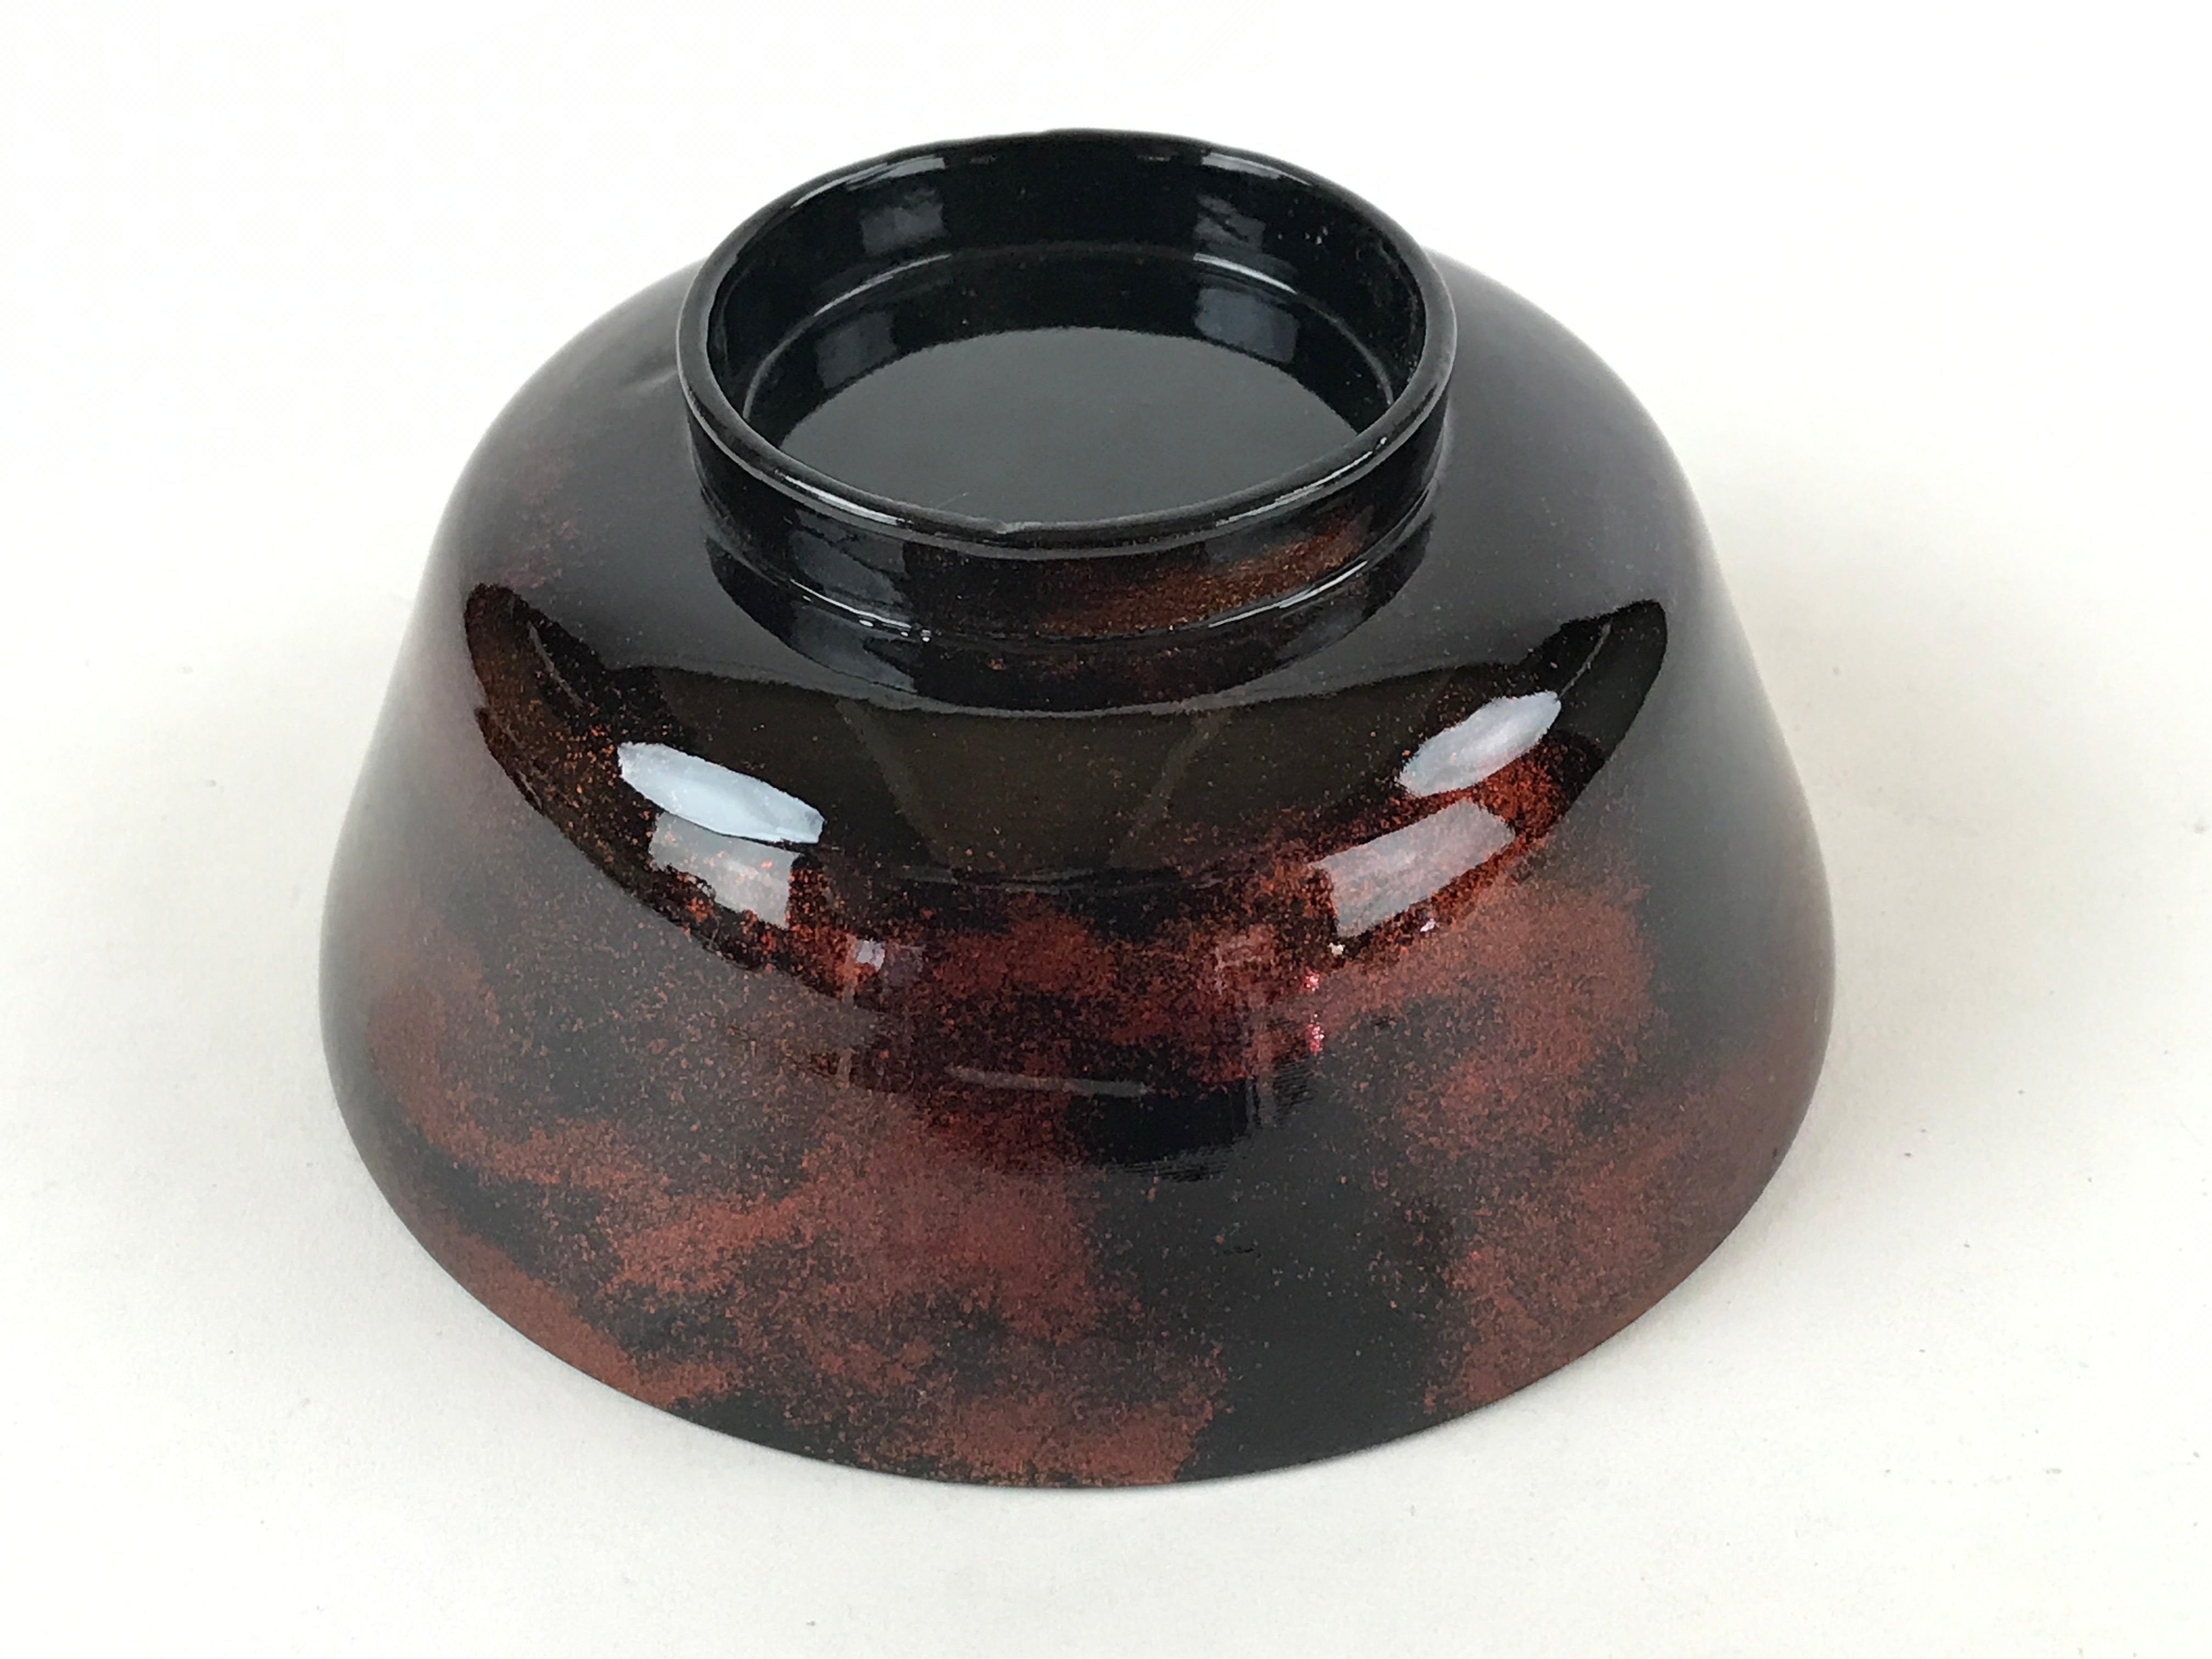 Japanese Lacquerware Lidded Bowl Nimonowan Vtg Black Orange Rice Soup LB79